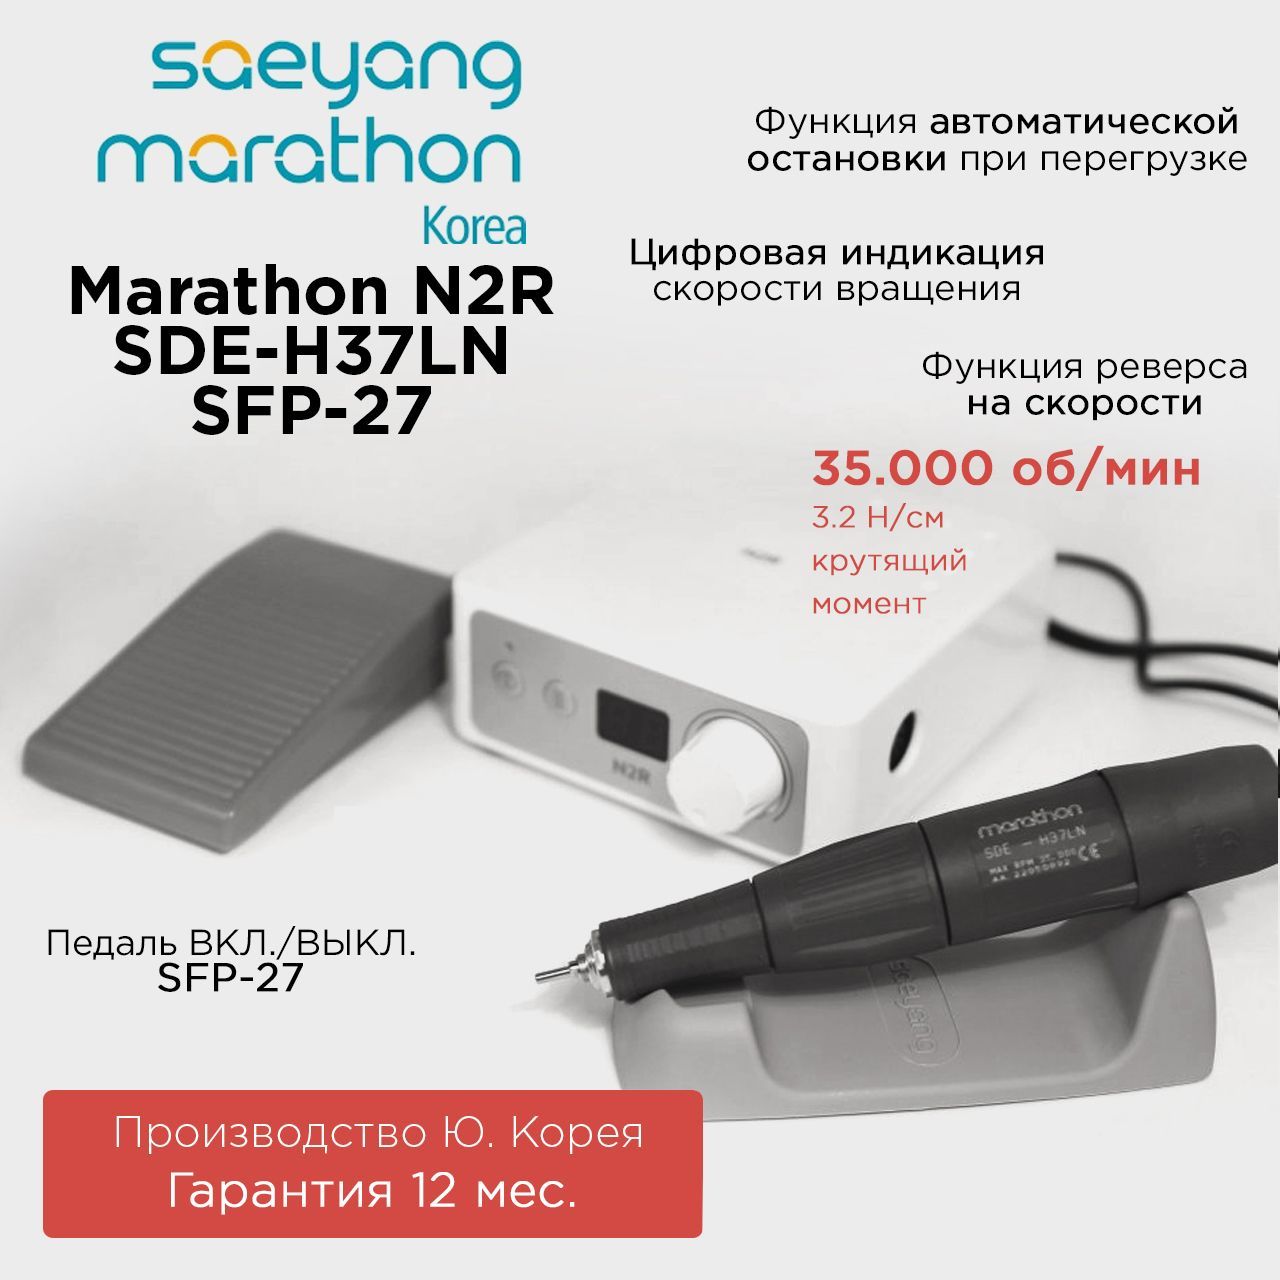 Аппарат для маникюра Marathon N2R SDE-H37LN с педалью SFP-27 цифровая обработка изображений